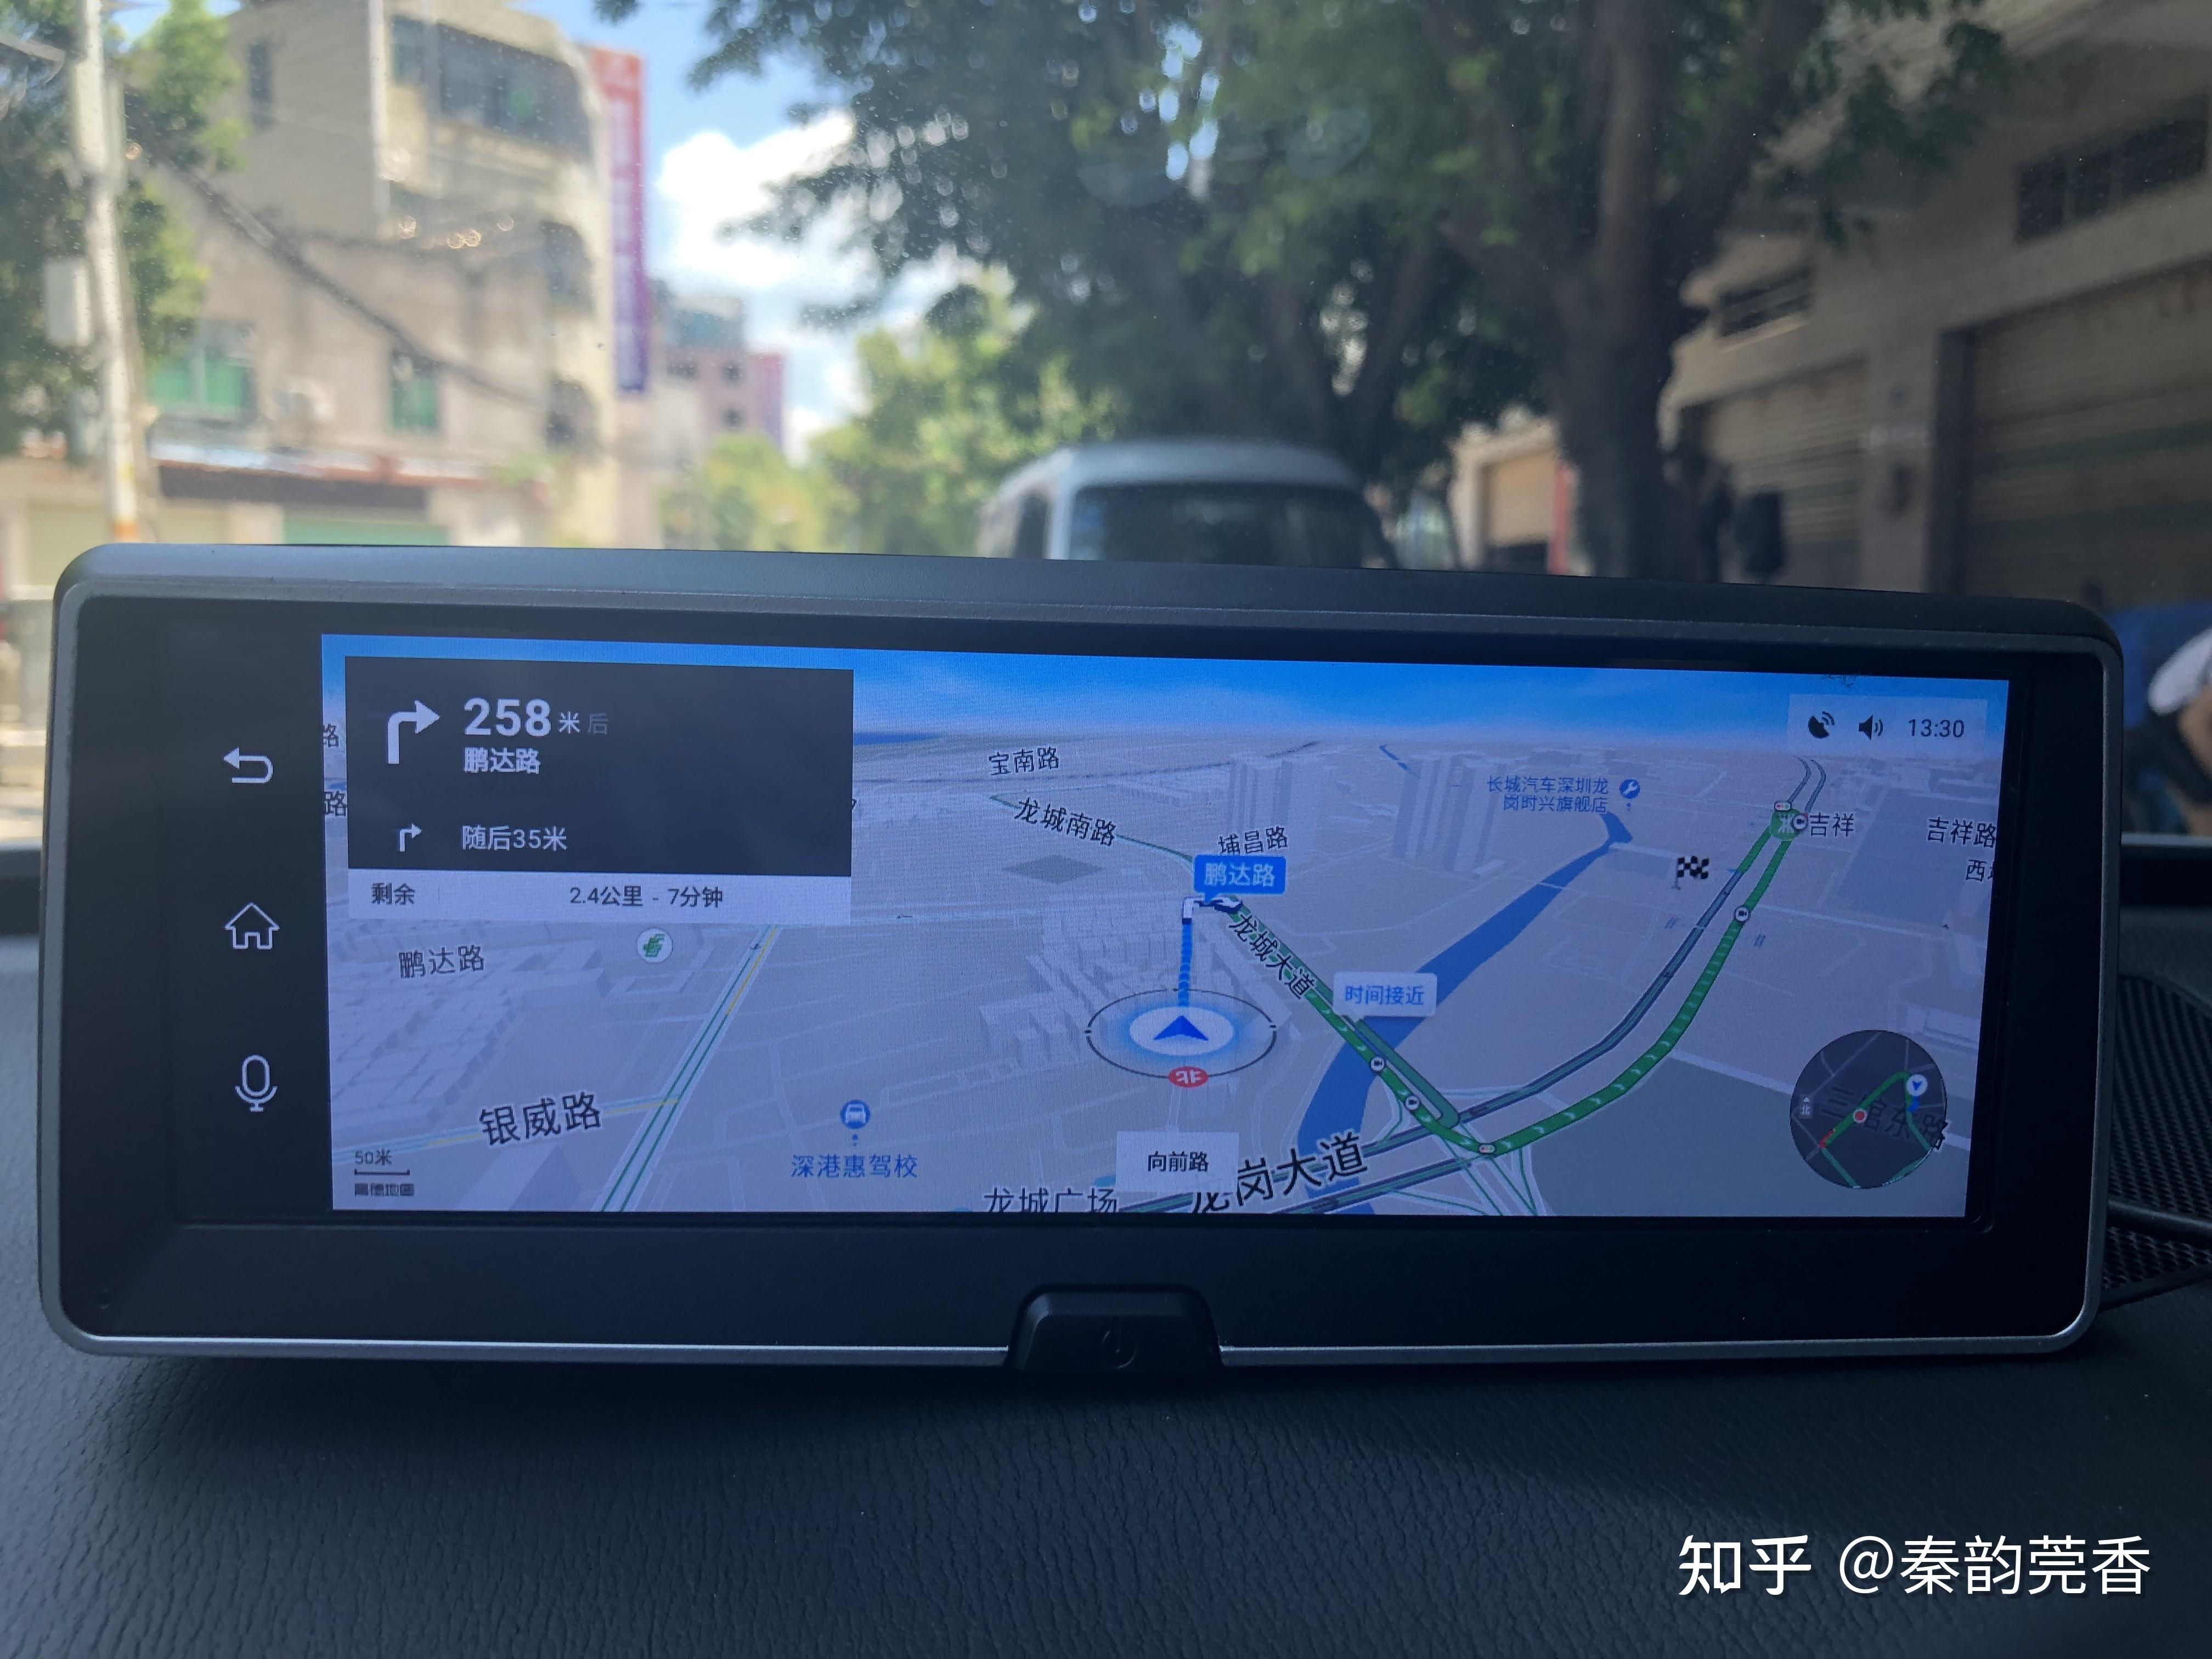 高德业内率先实现城市内全程车道级导航，并首先在北京市开展内测 - 新智派